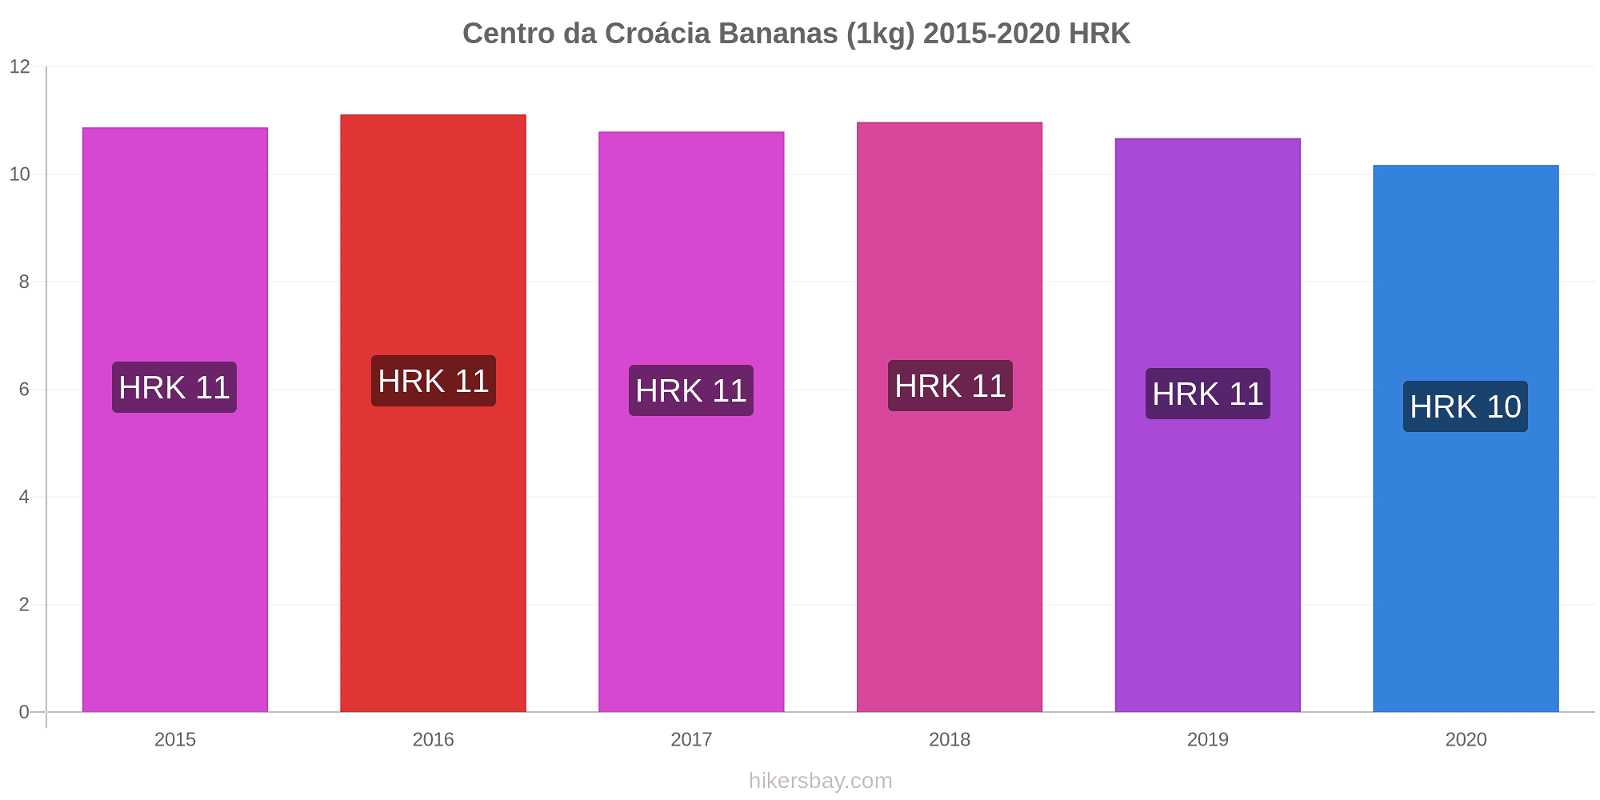 Centro da Croácia variação de preço Banana (1kg) hikersbay.com